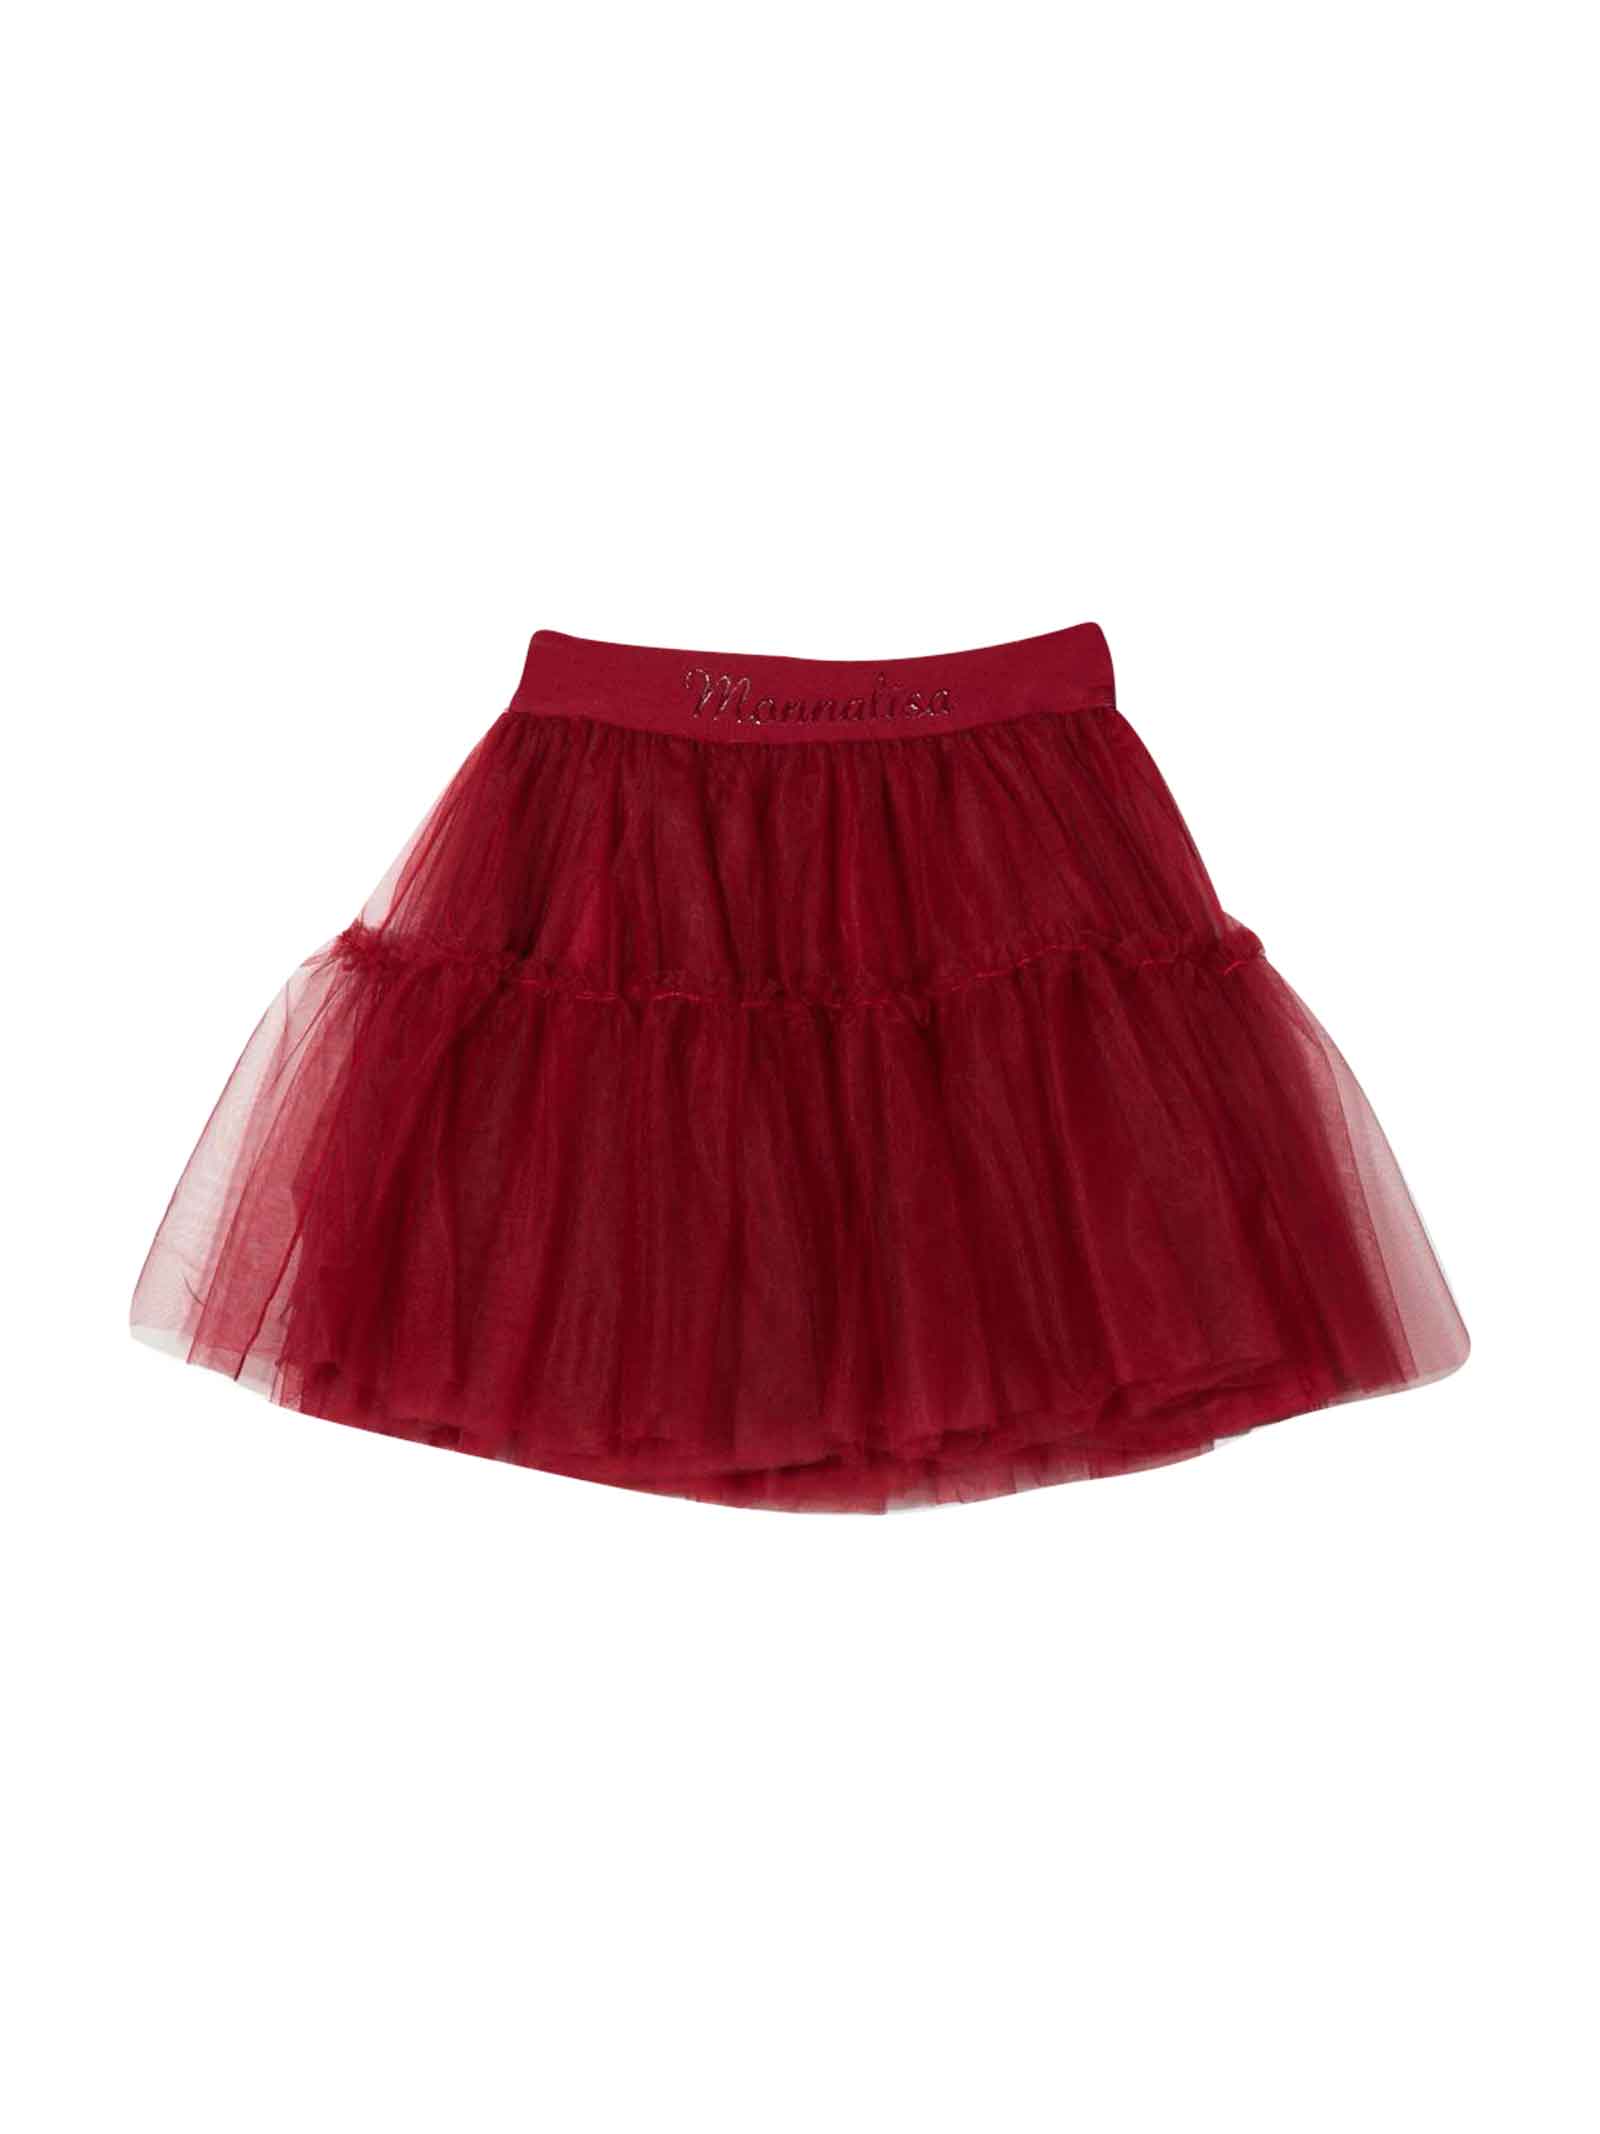 Monnalisa Red Skirt Girl